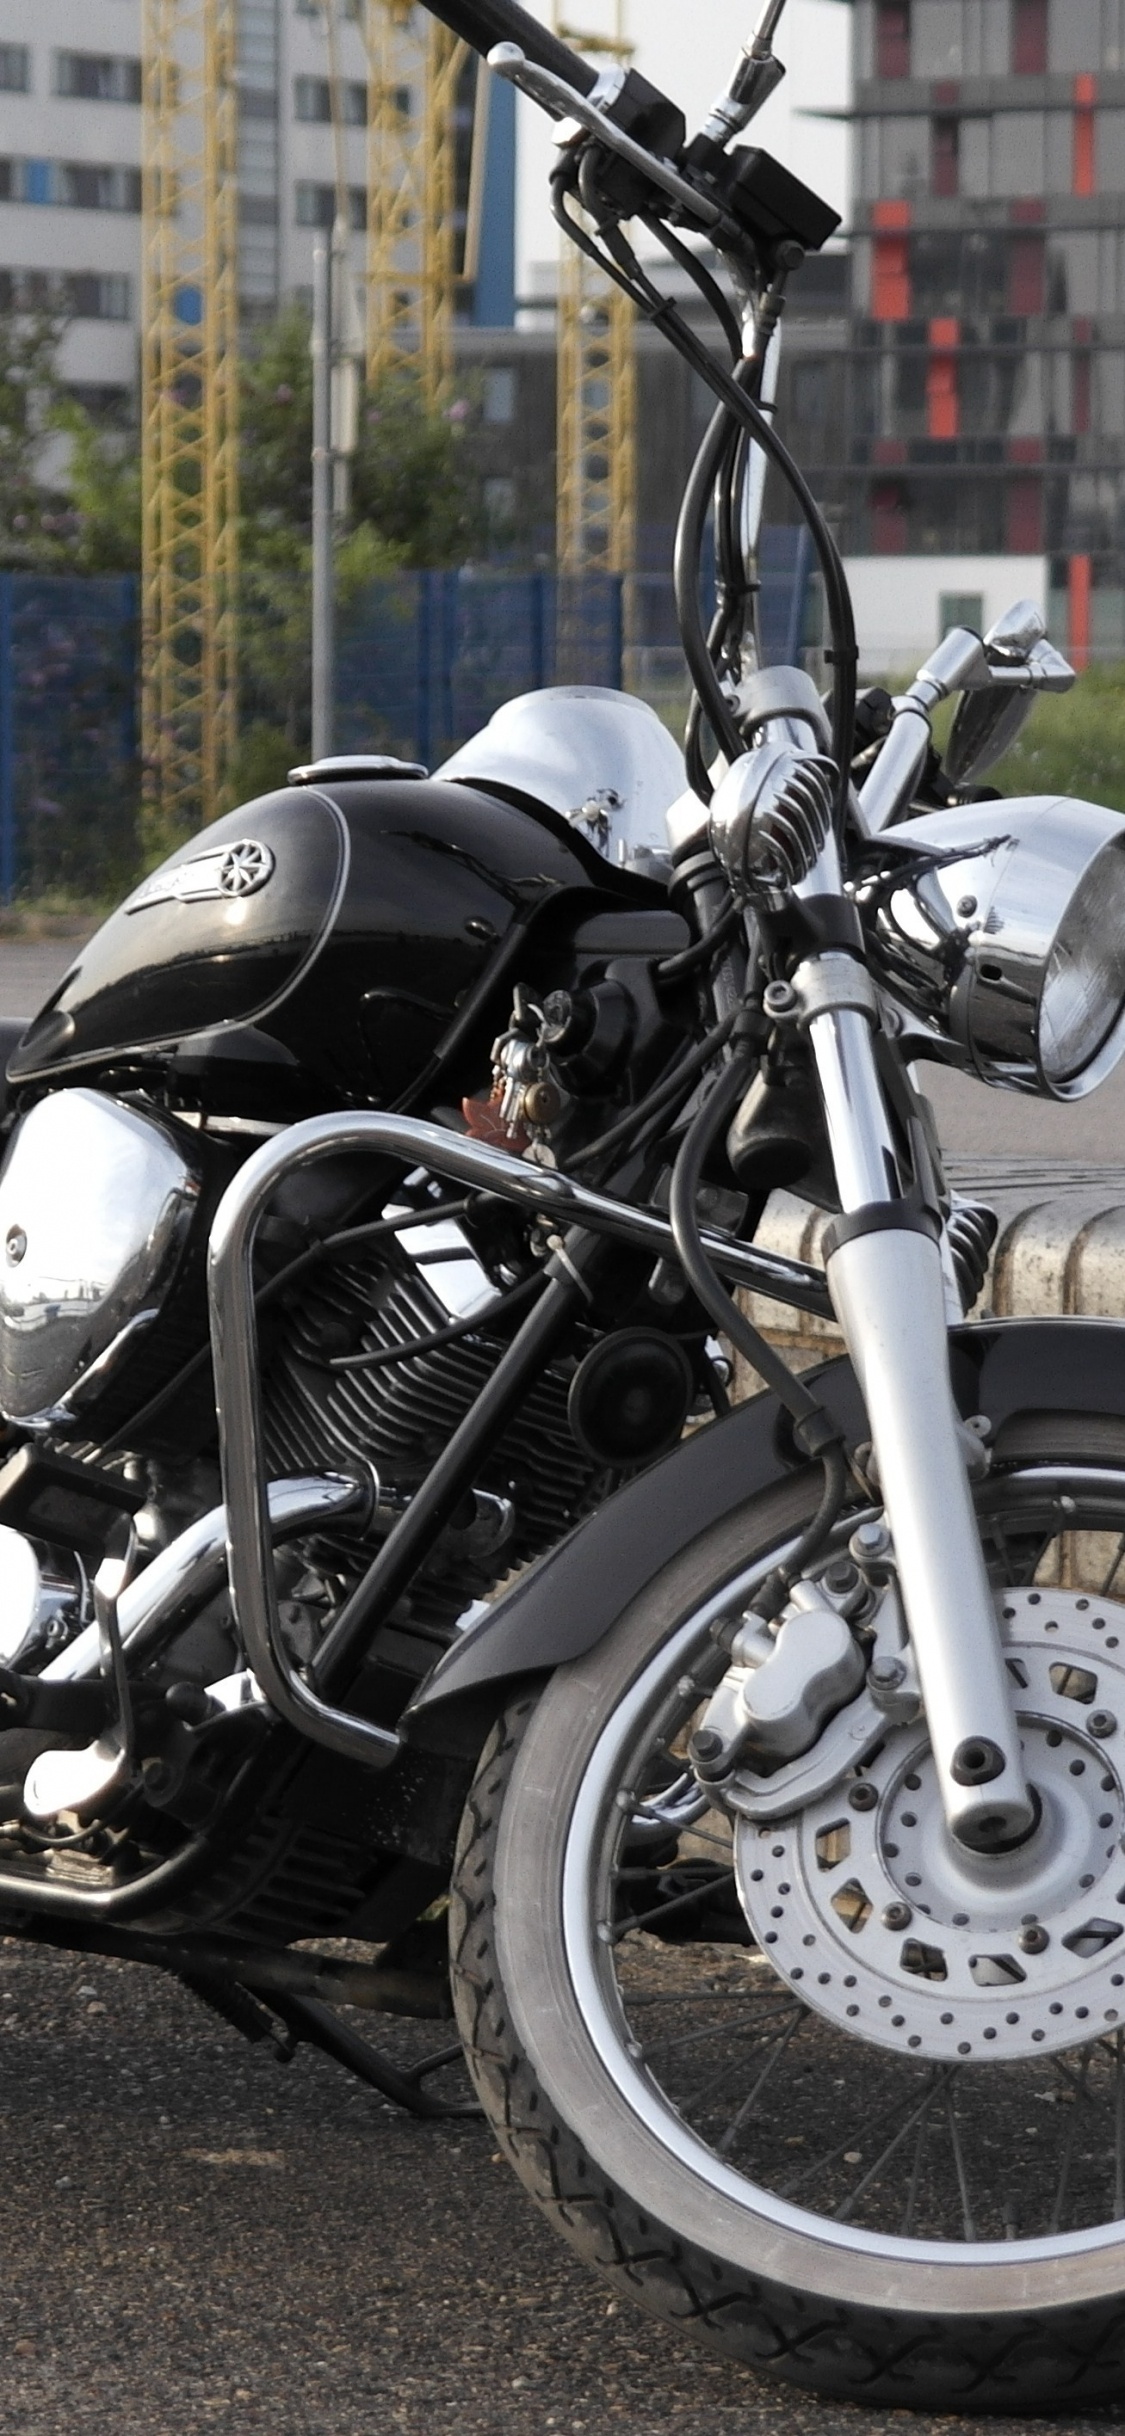 Motocicleta Cruiser Negra y Plateada en la Carretera Durante el Día. Wallpaper in 1125x2436 Resolution